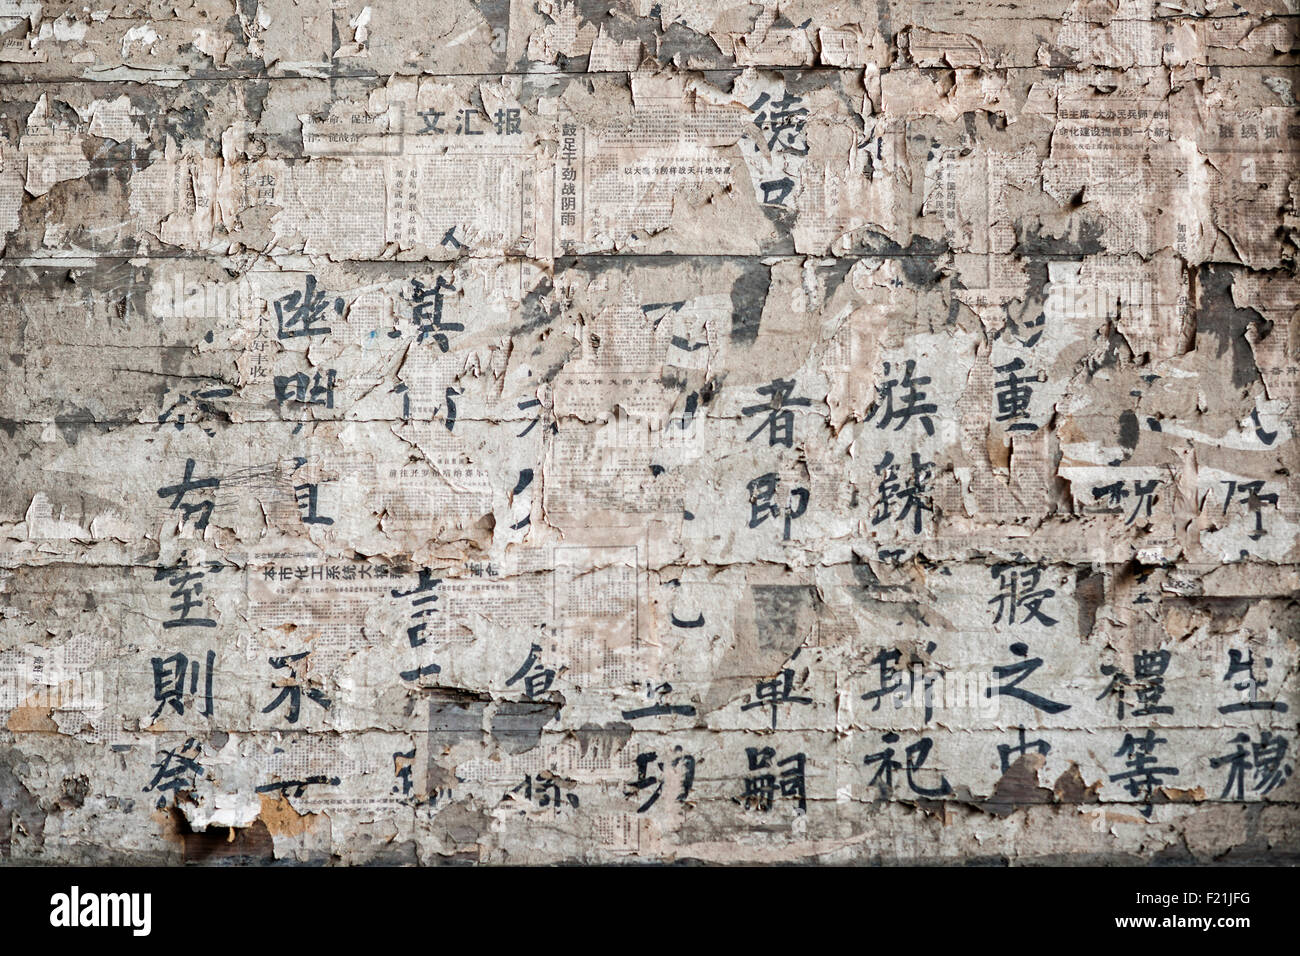 L'écriture chinoise peinte sur old weathered coupures collées sur un mur, Chengkan village, China, Asia Banque D'Images